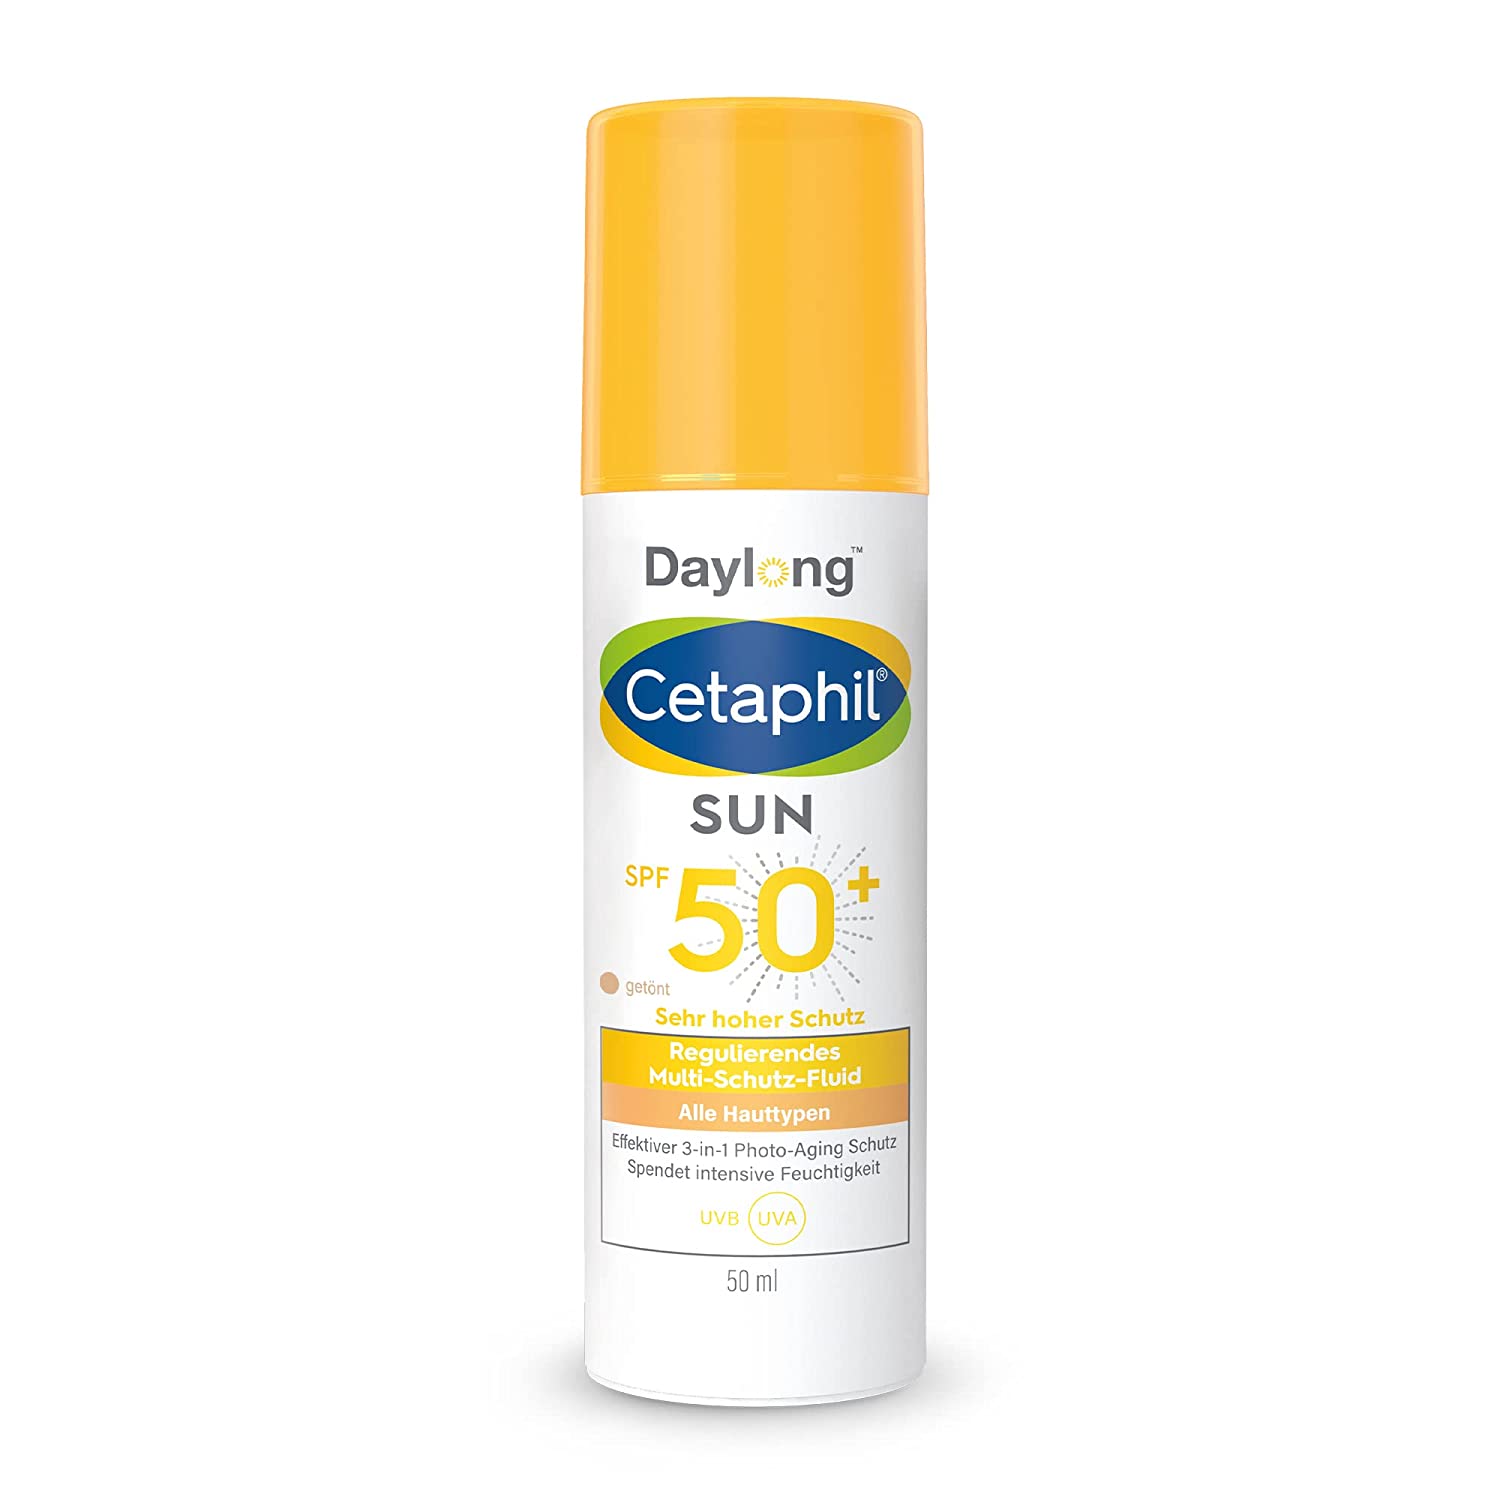 Cetaphil Sun Daylong SPF 50+ Reg. Multi-Protection Fluid 50 ml, ‎white